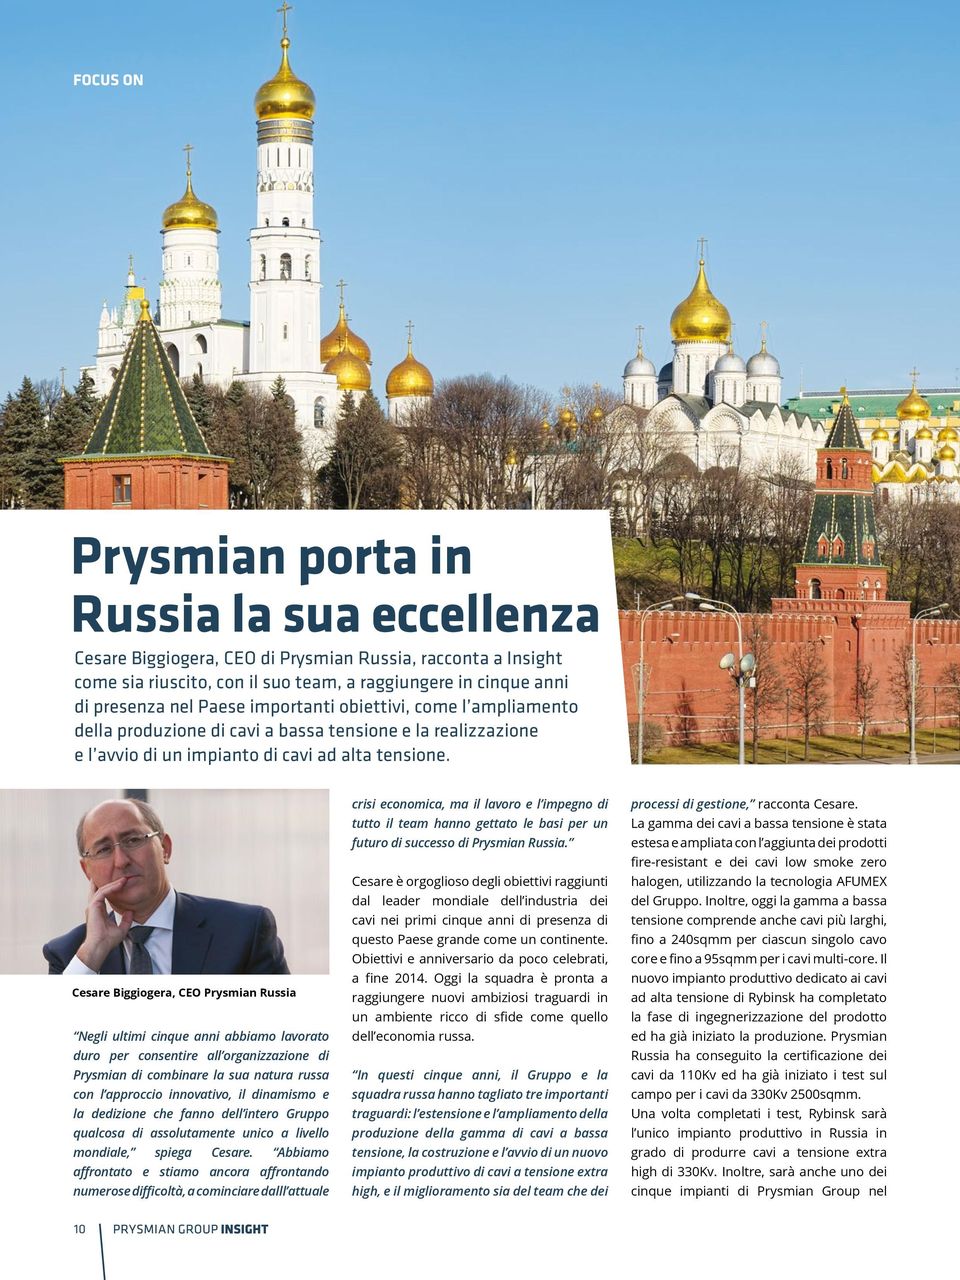 Cesare Biggiogera, CEO Prysmian Russia Negli ultimi cinque anni abbiamo lavorato duro per consentire all organizzazione di Prysmian di combinare la sua natura russa con l approccio innovativo, il